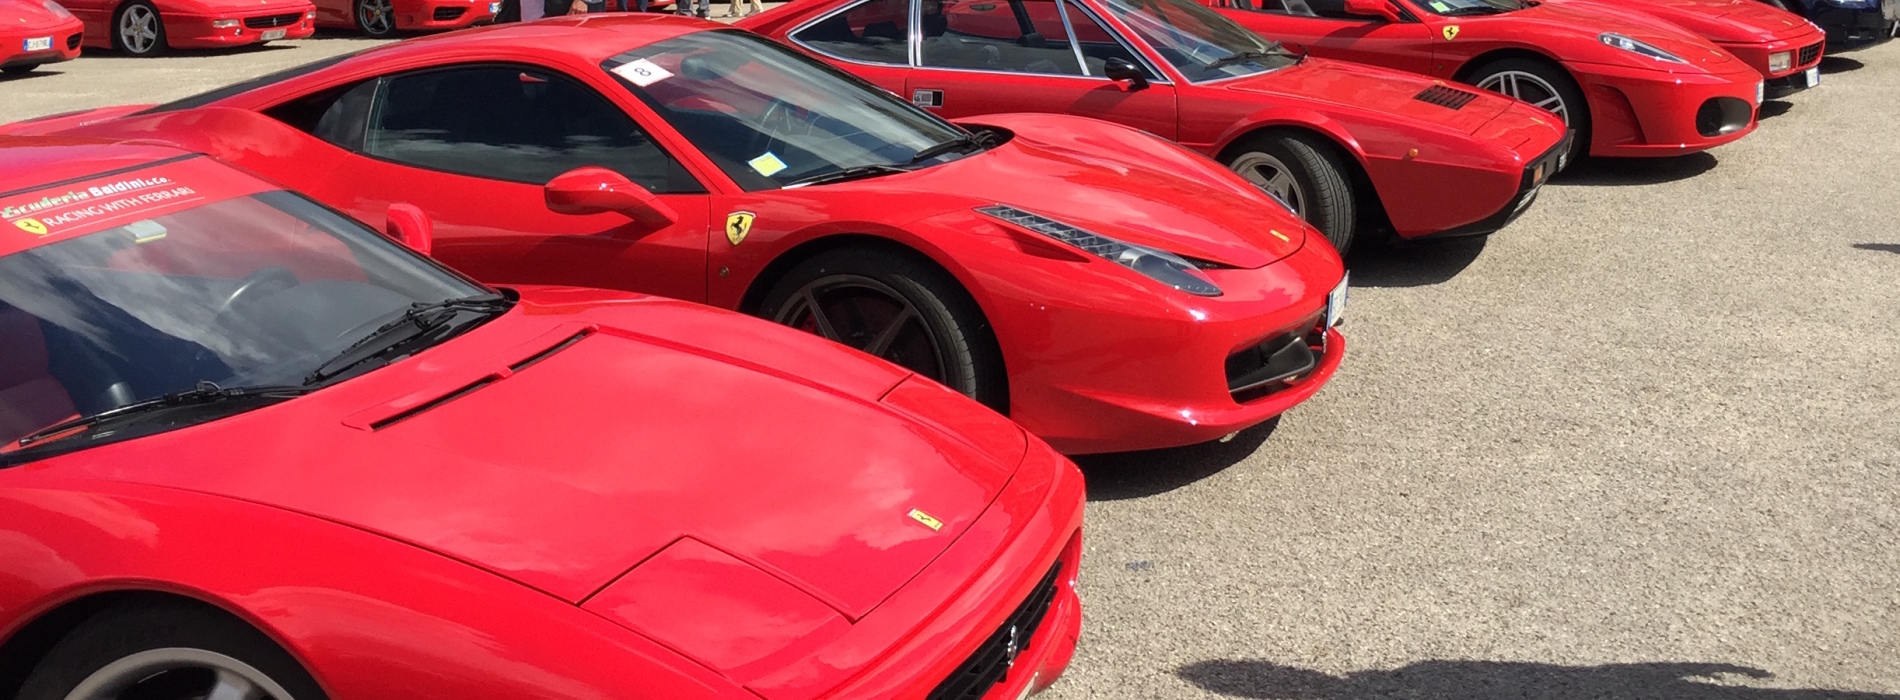 Le Ferrari in pista per l’Unicef